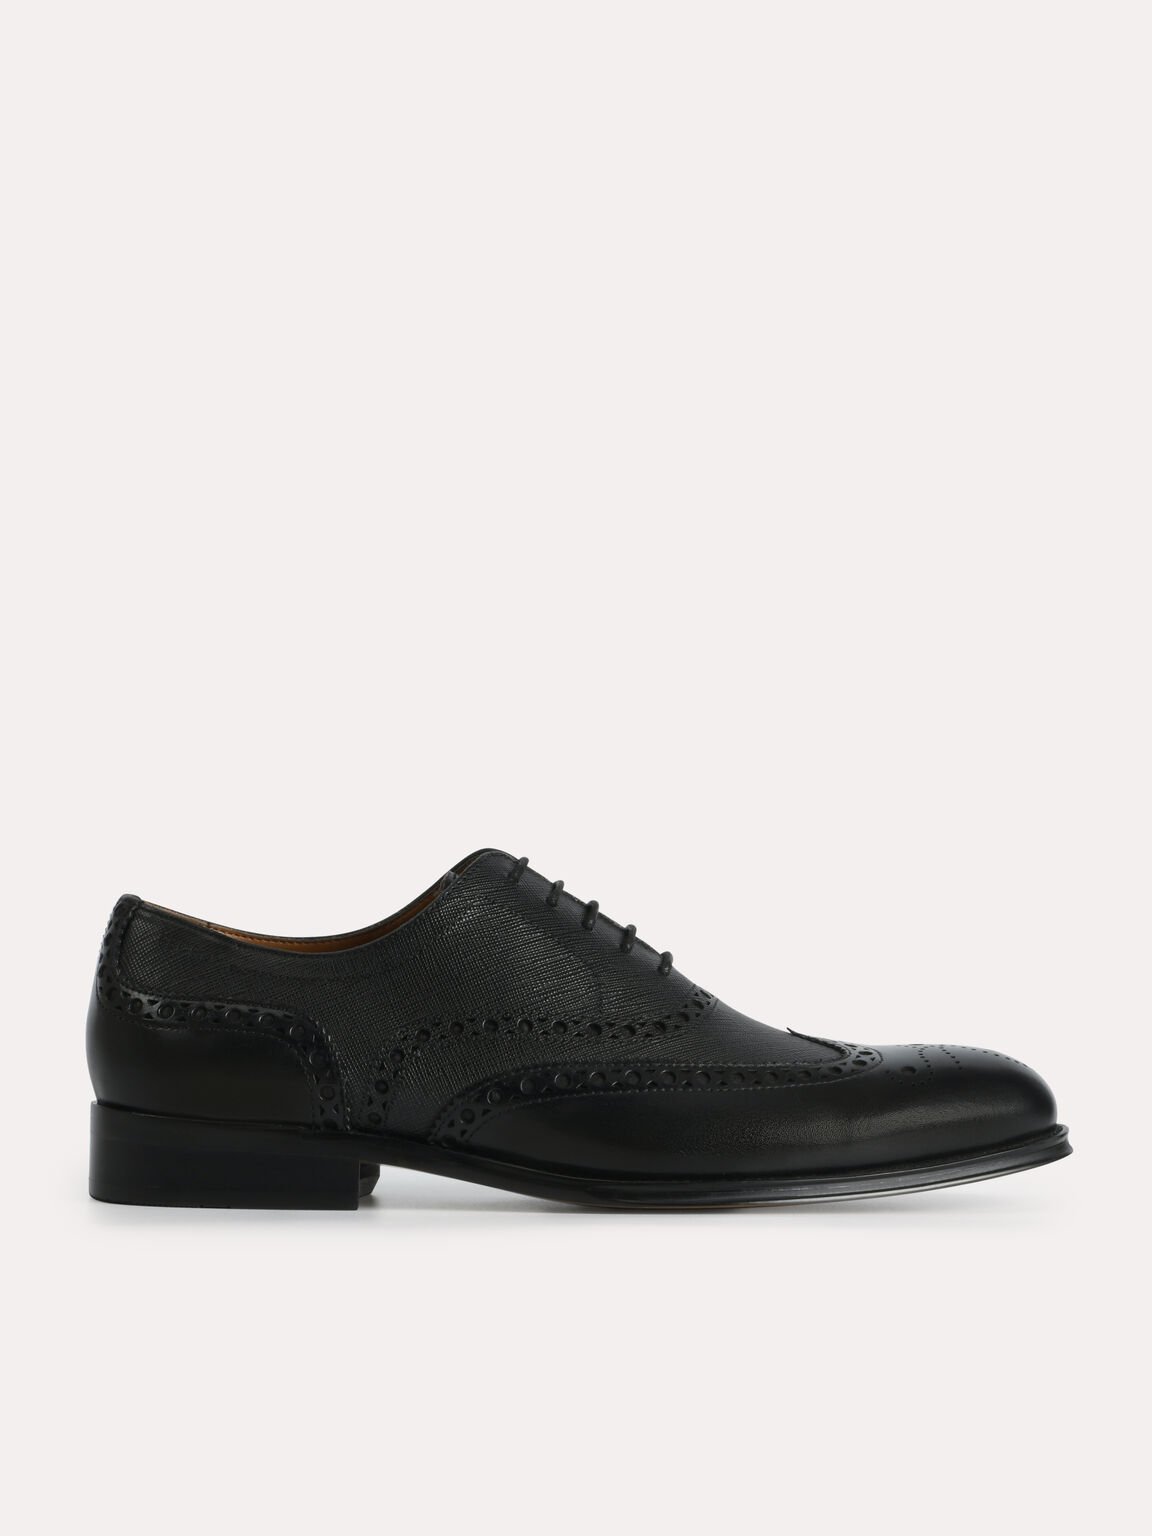 織紋布洛克牛津鞋, 黑色